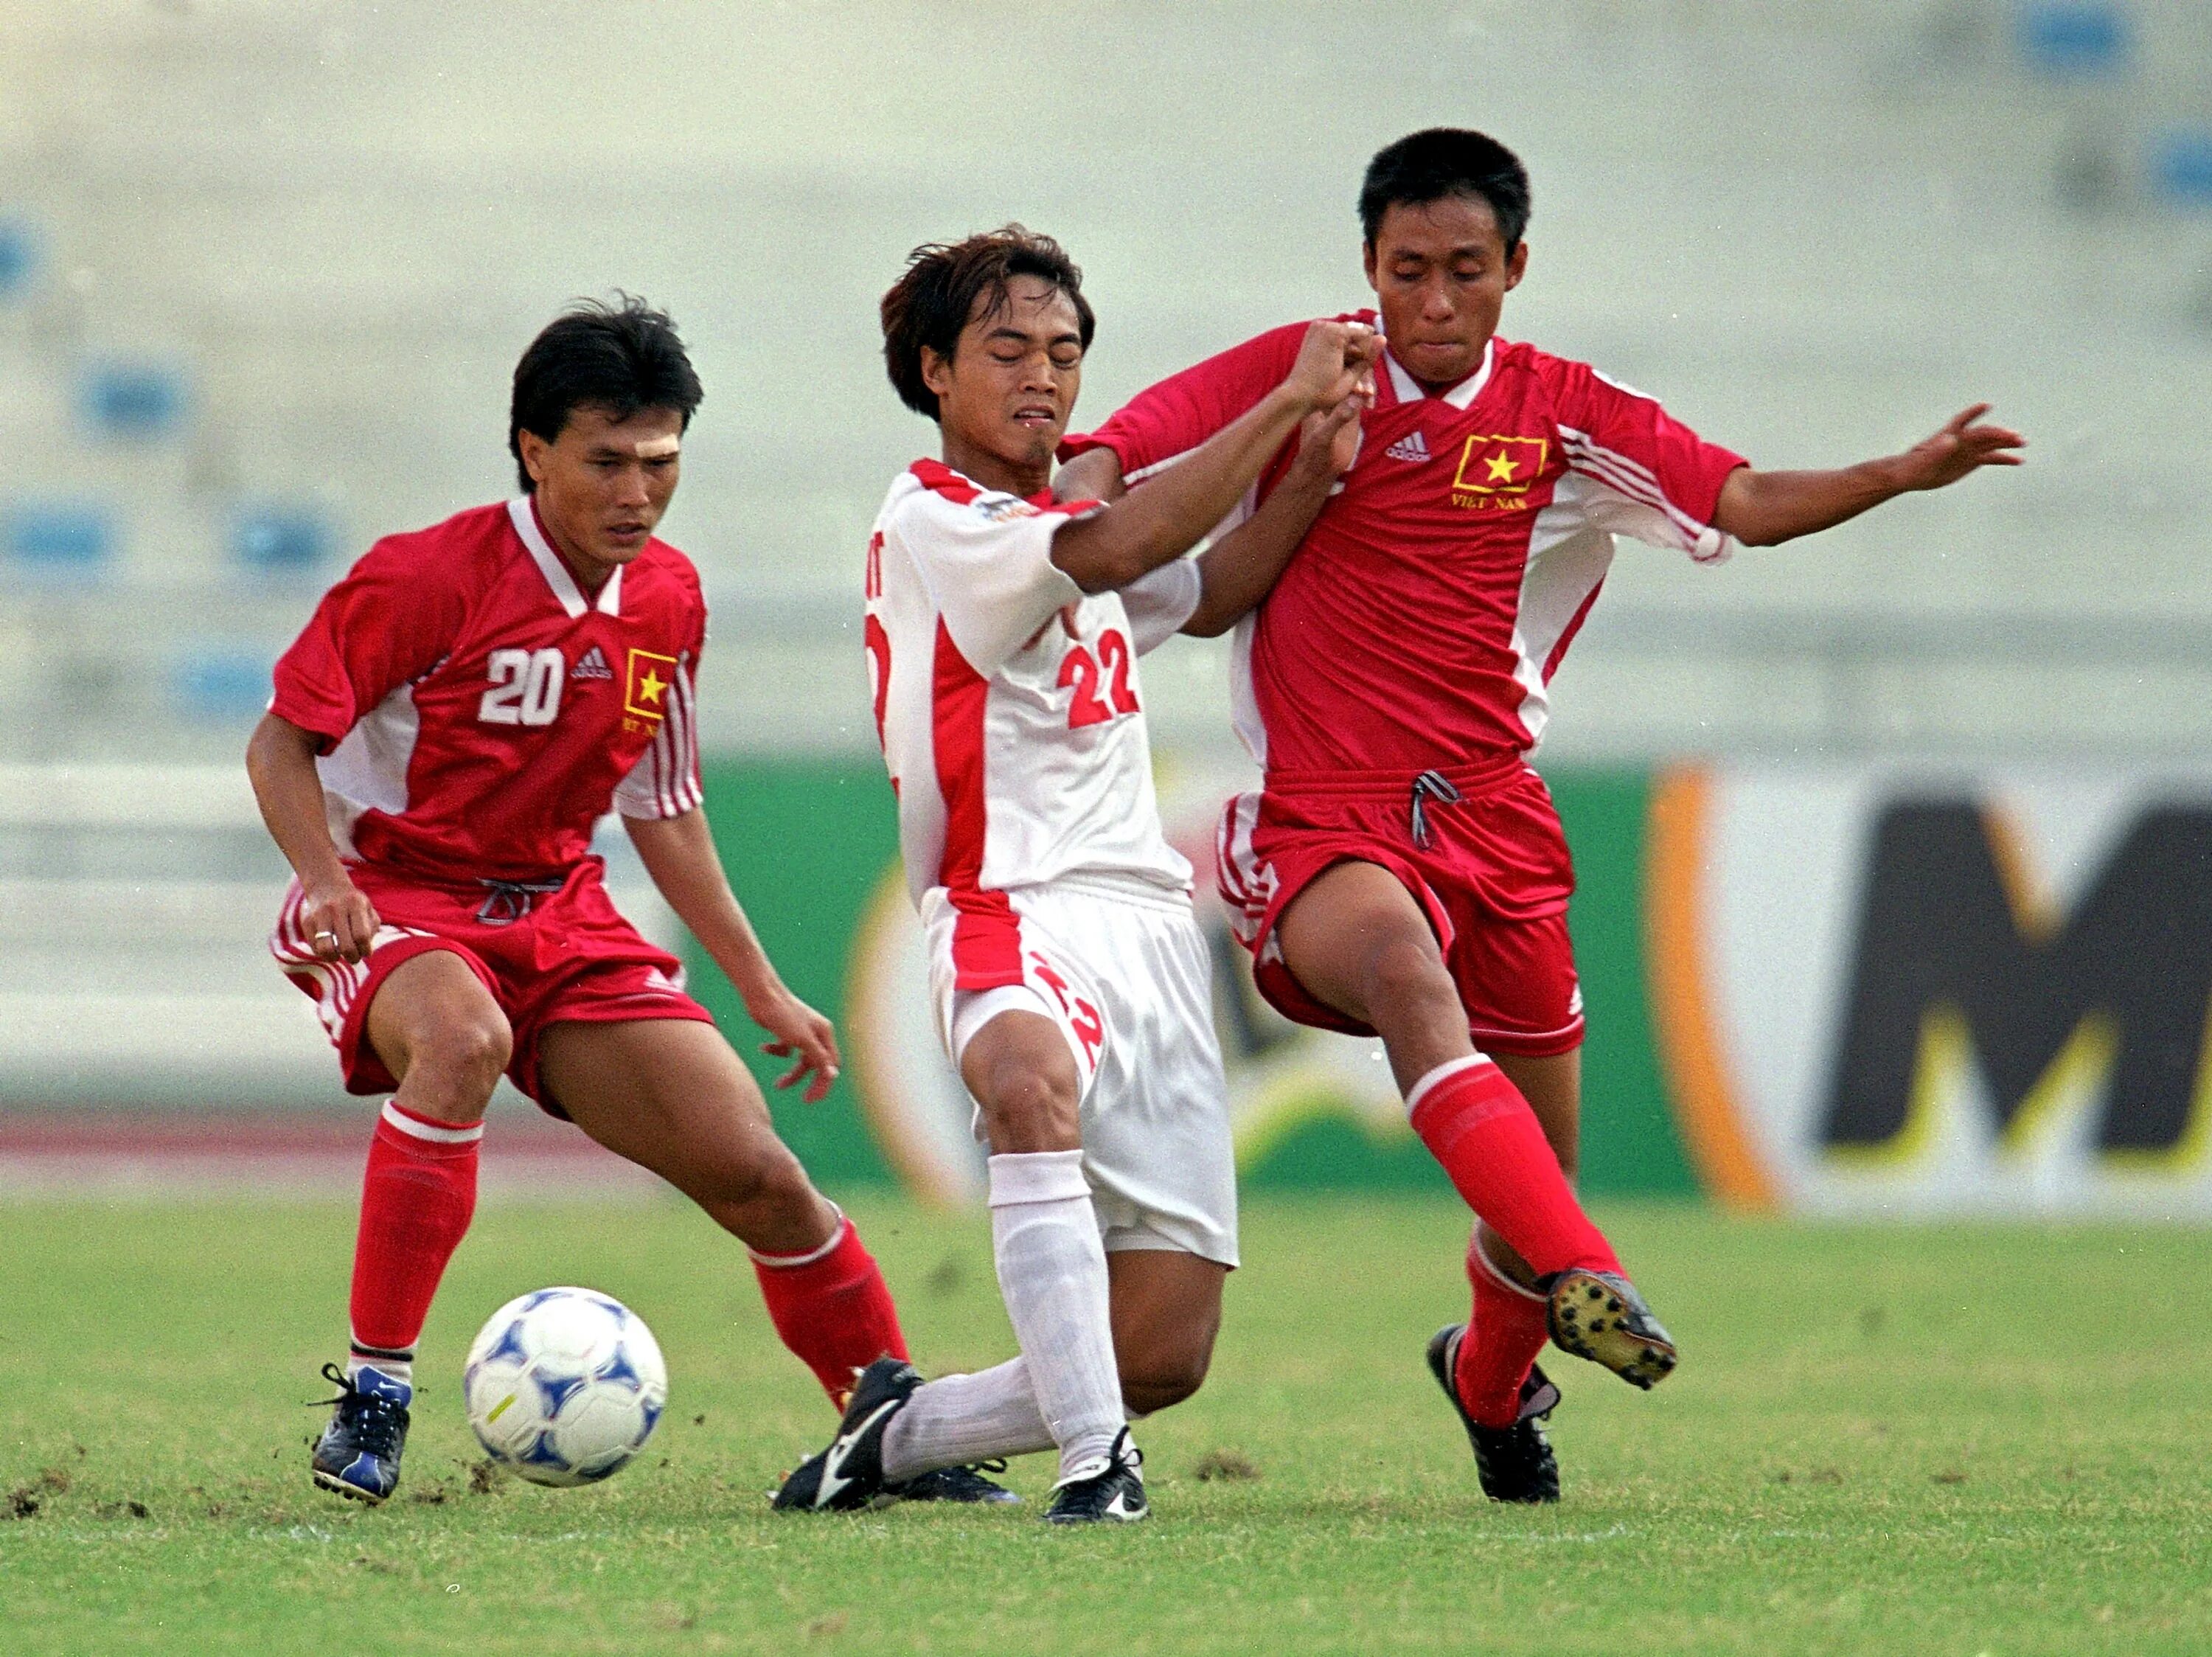 Раджамангала. Футбол Таиланд и Индонезия в каких цветах майках.